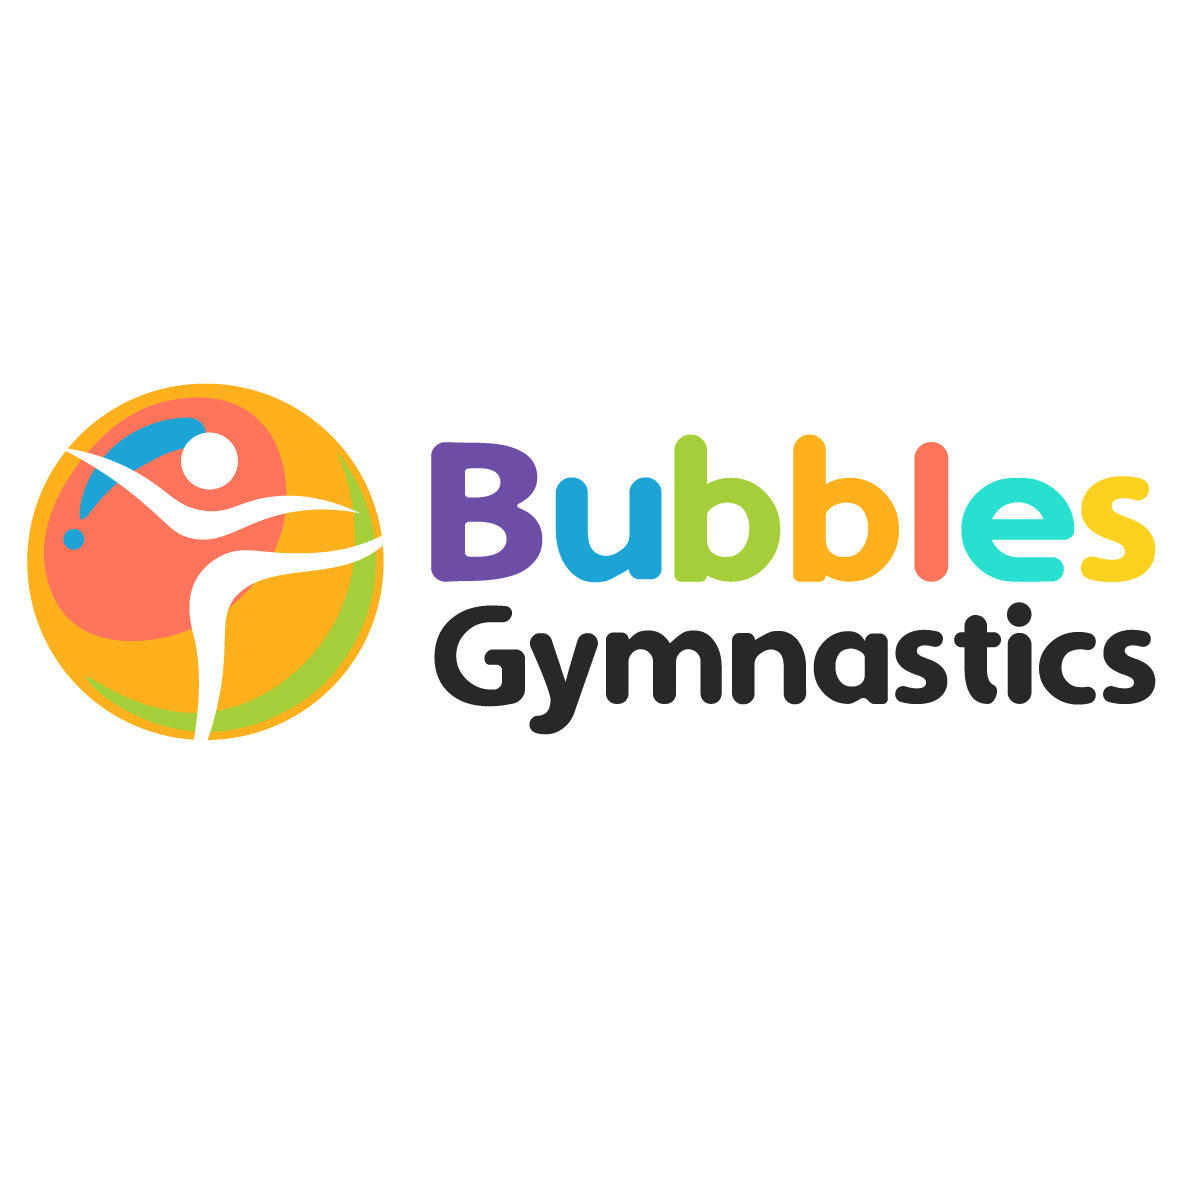 Bubbles Gymnastics Pte. Ltd. company logo